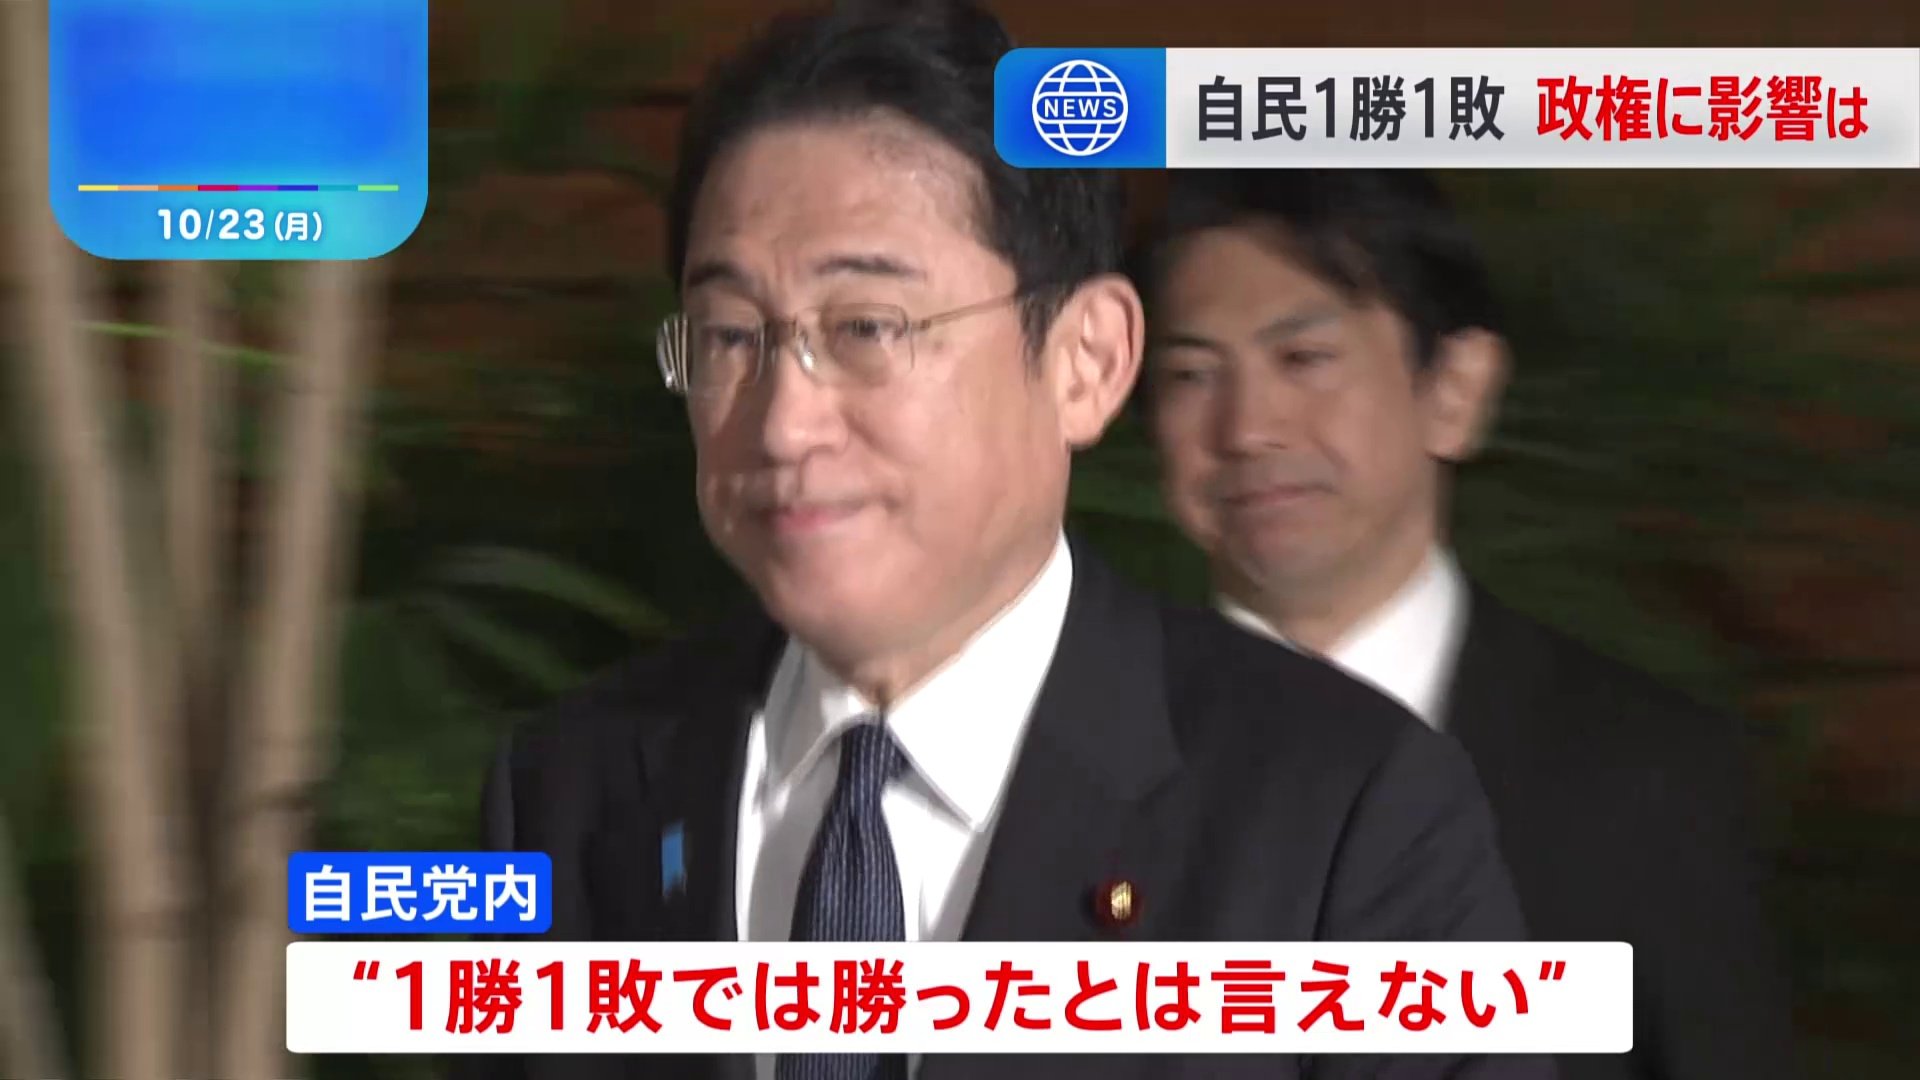 衆参2補選は「1勝1敗」与野党の反応　岸田総理は経済対策に集中へ